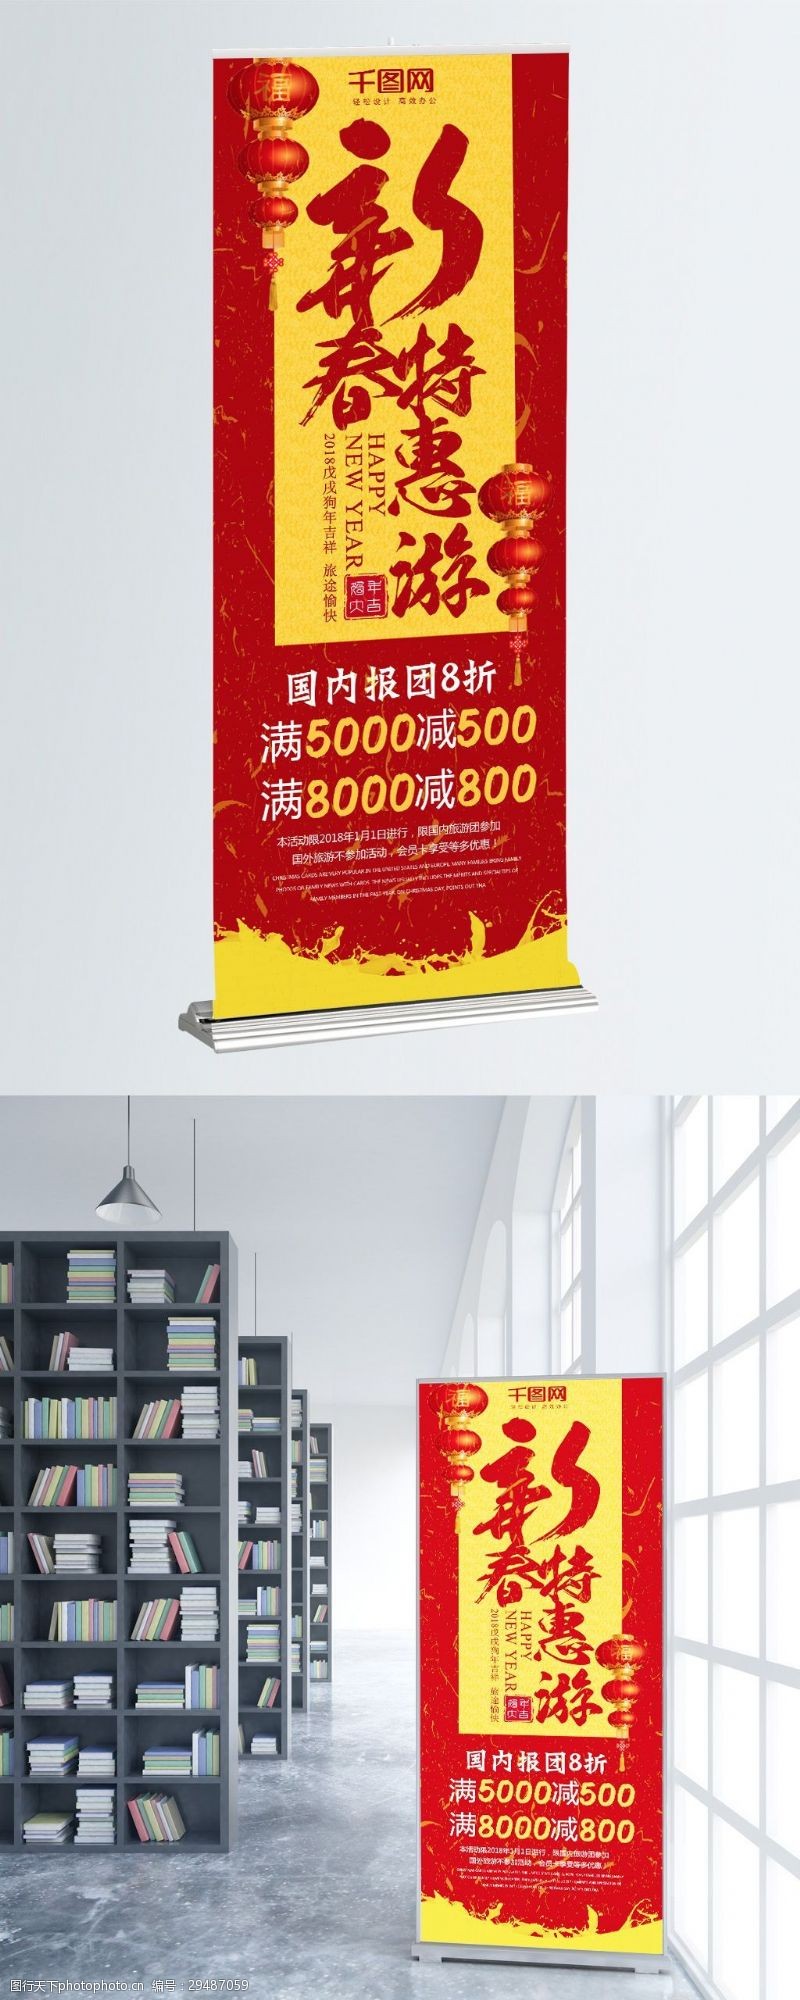 新春特惠游旅游促销展架设计psd模板